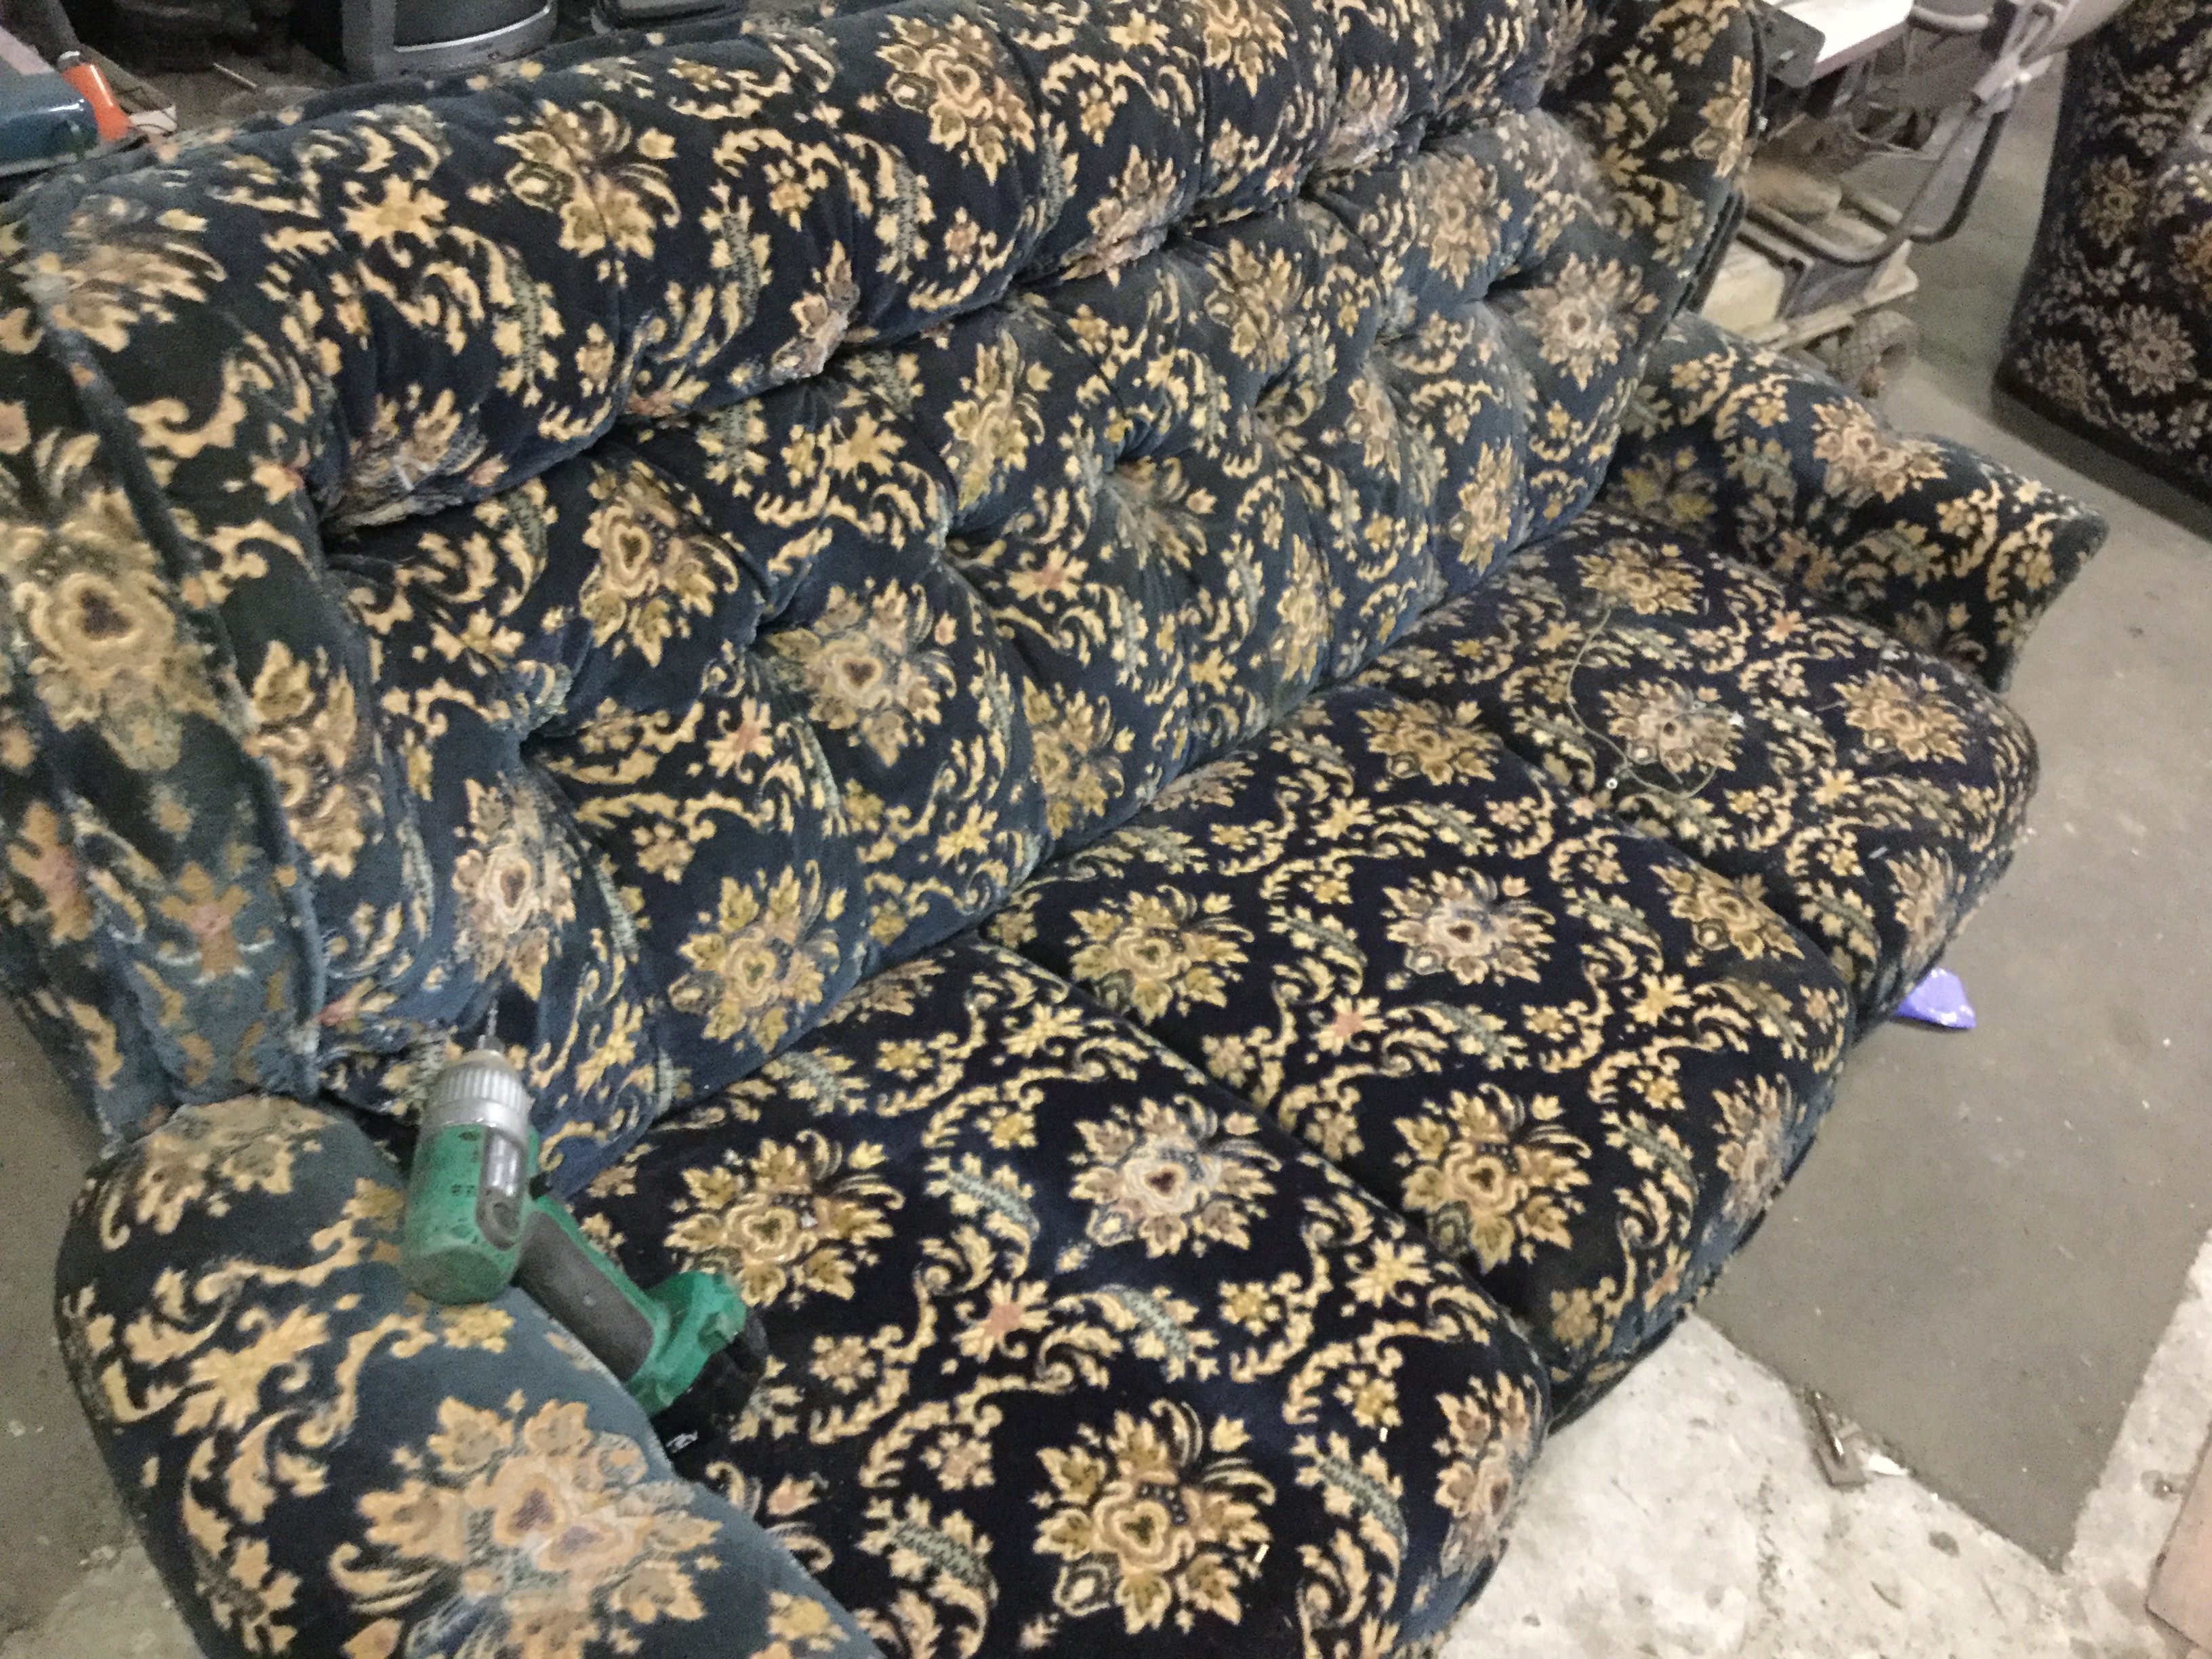 福山市御幸町で回収した粗大ゴミのソファー